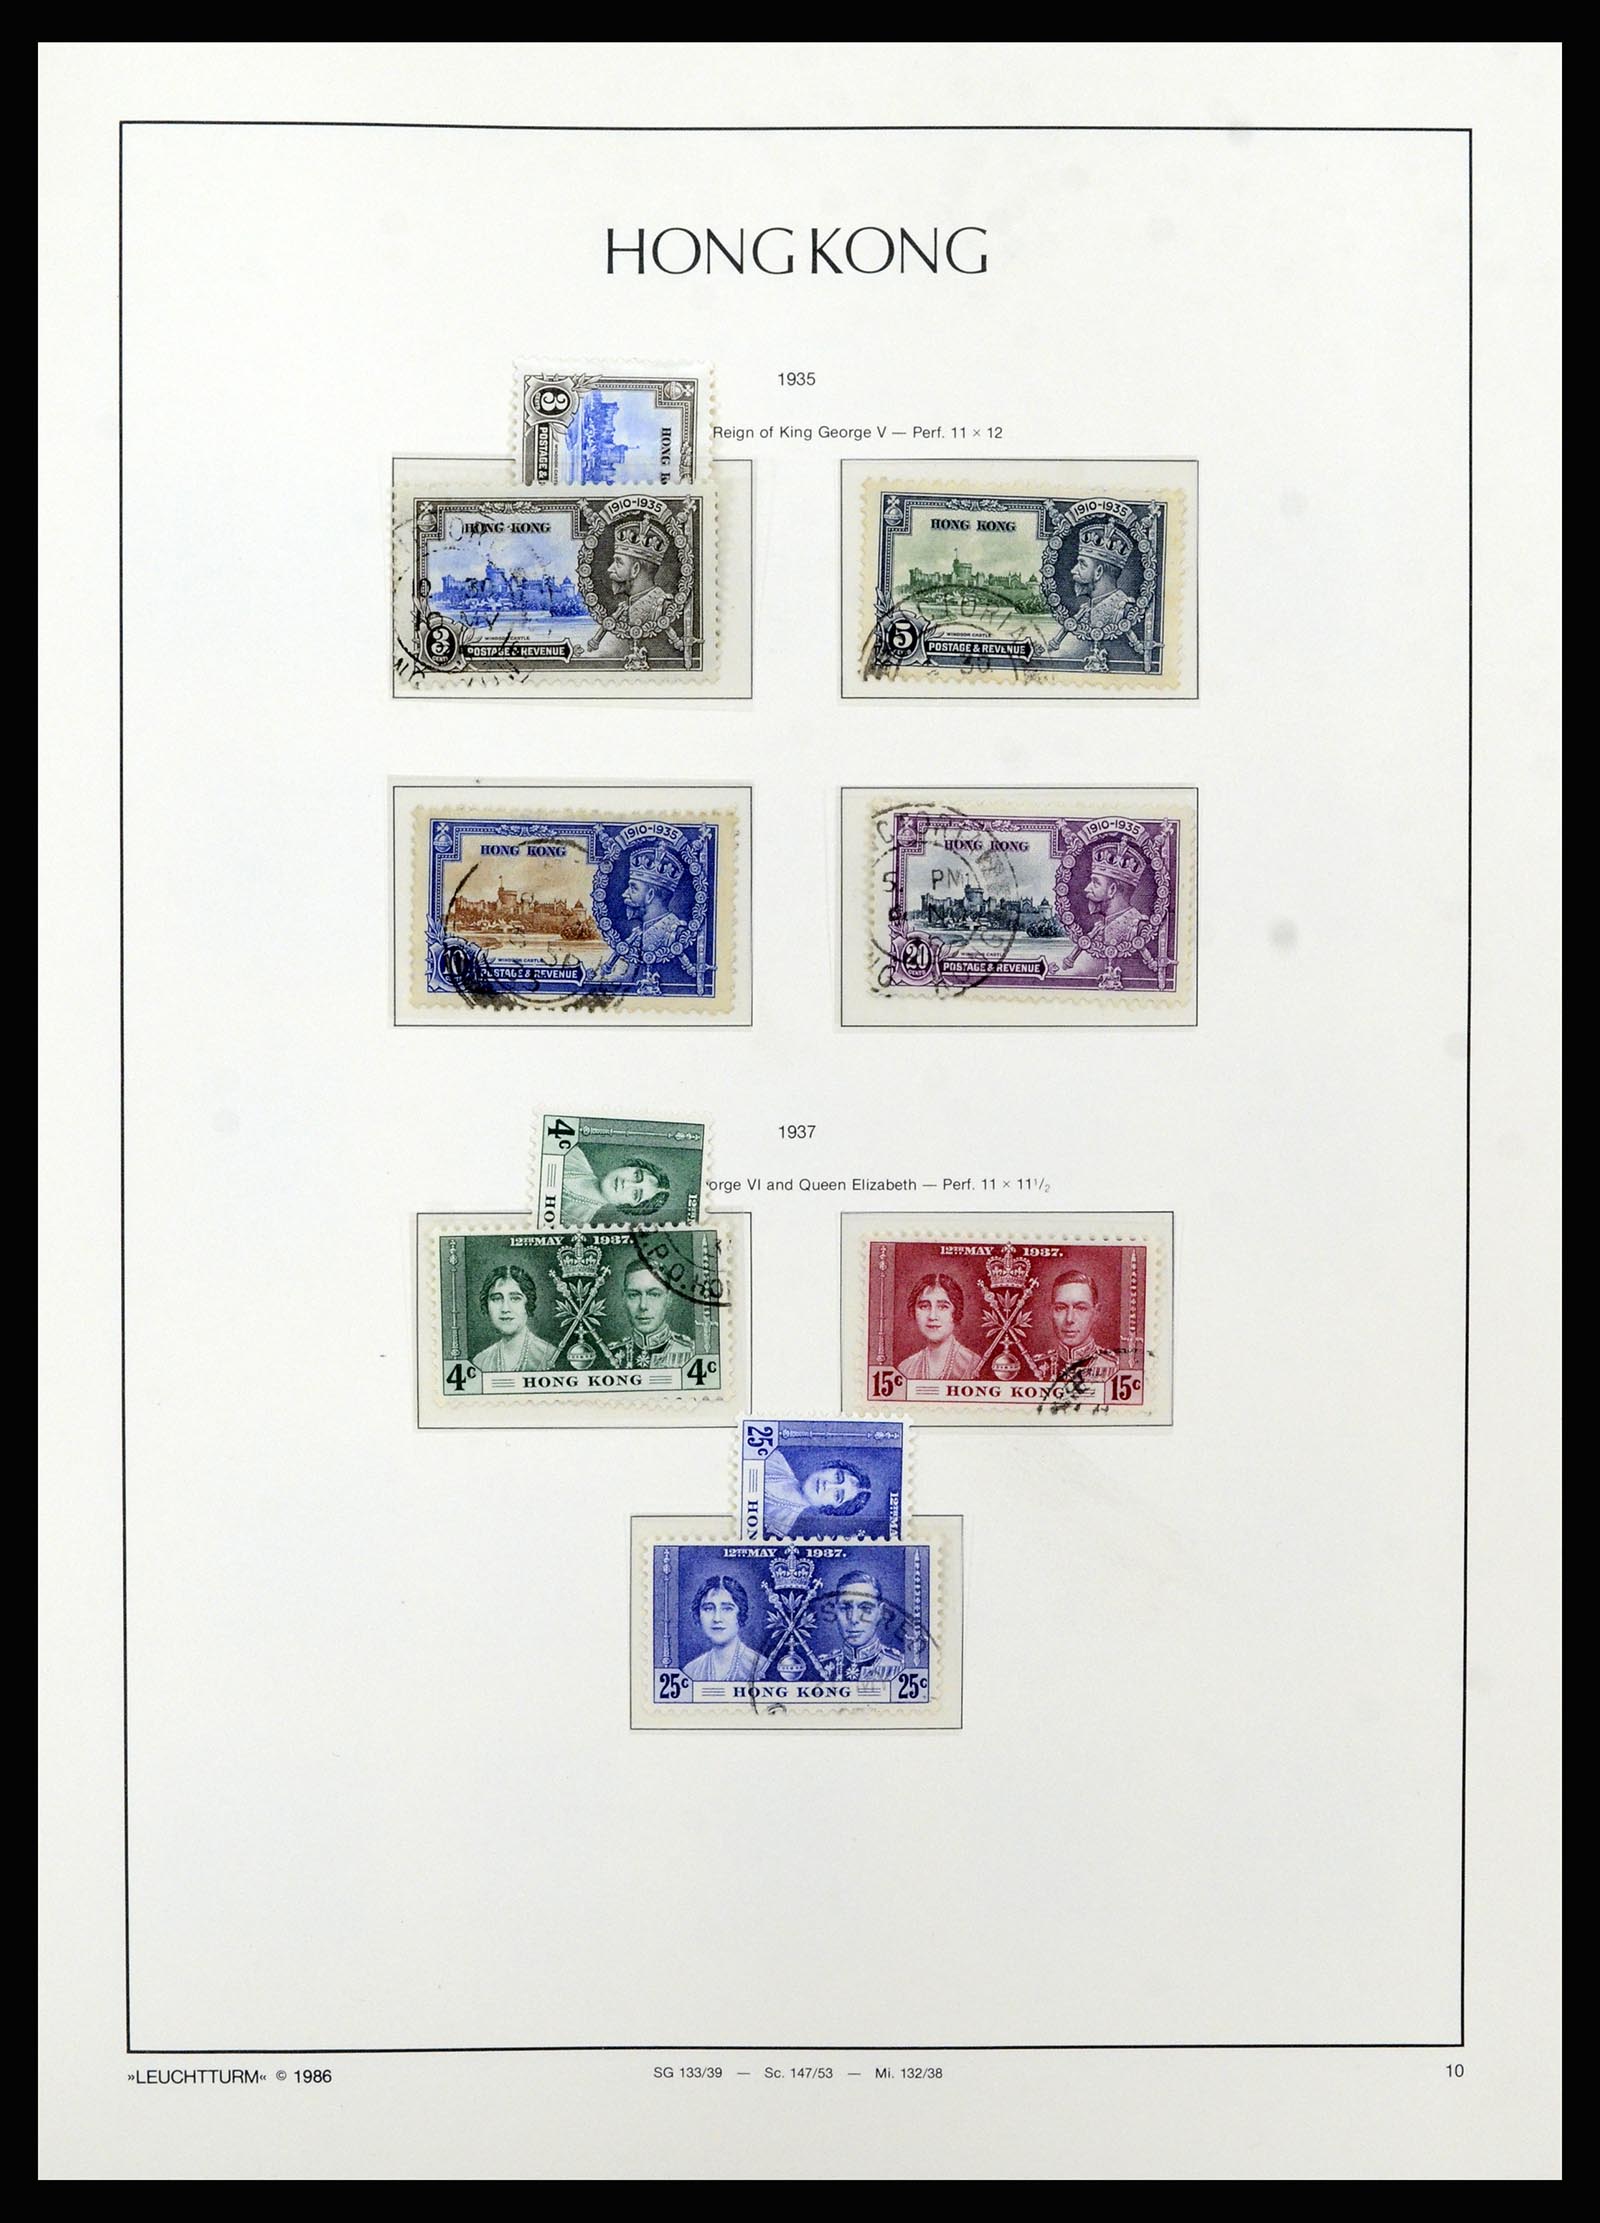 37070 010 - Stamp collection 37070 Hong Kong 1862-1996.